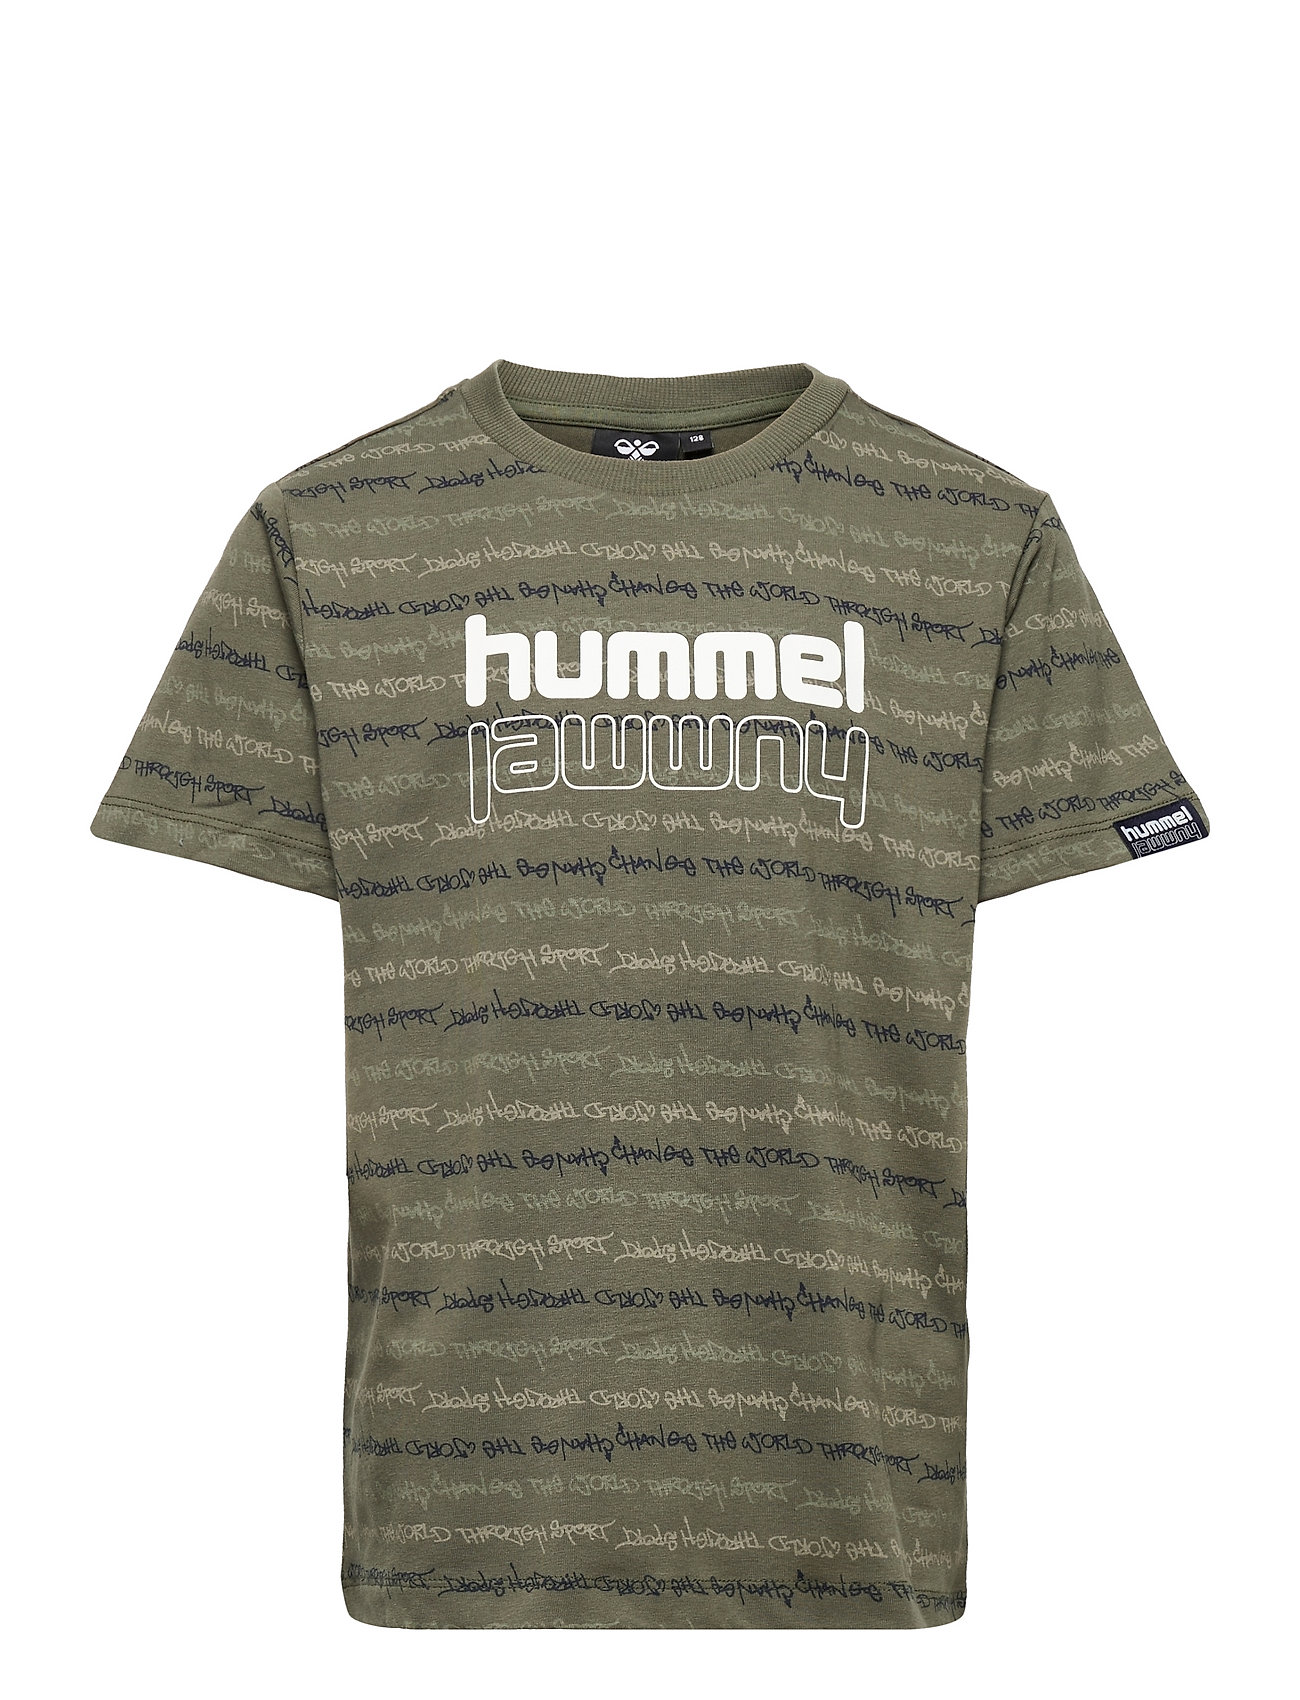 Hummel Hmldrew T-Shirt S/S Green Hummel